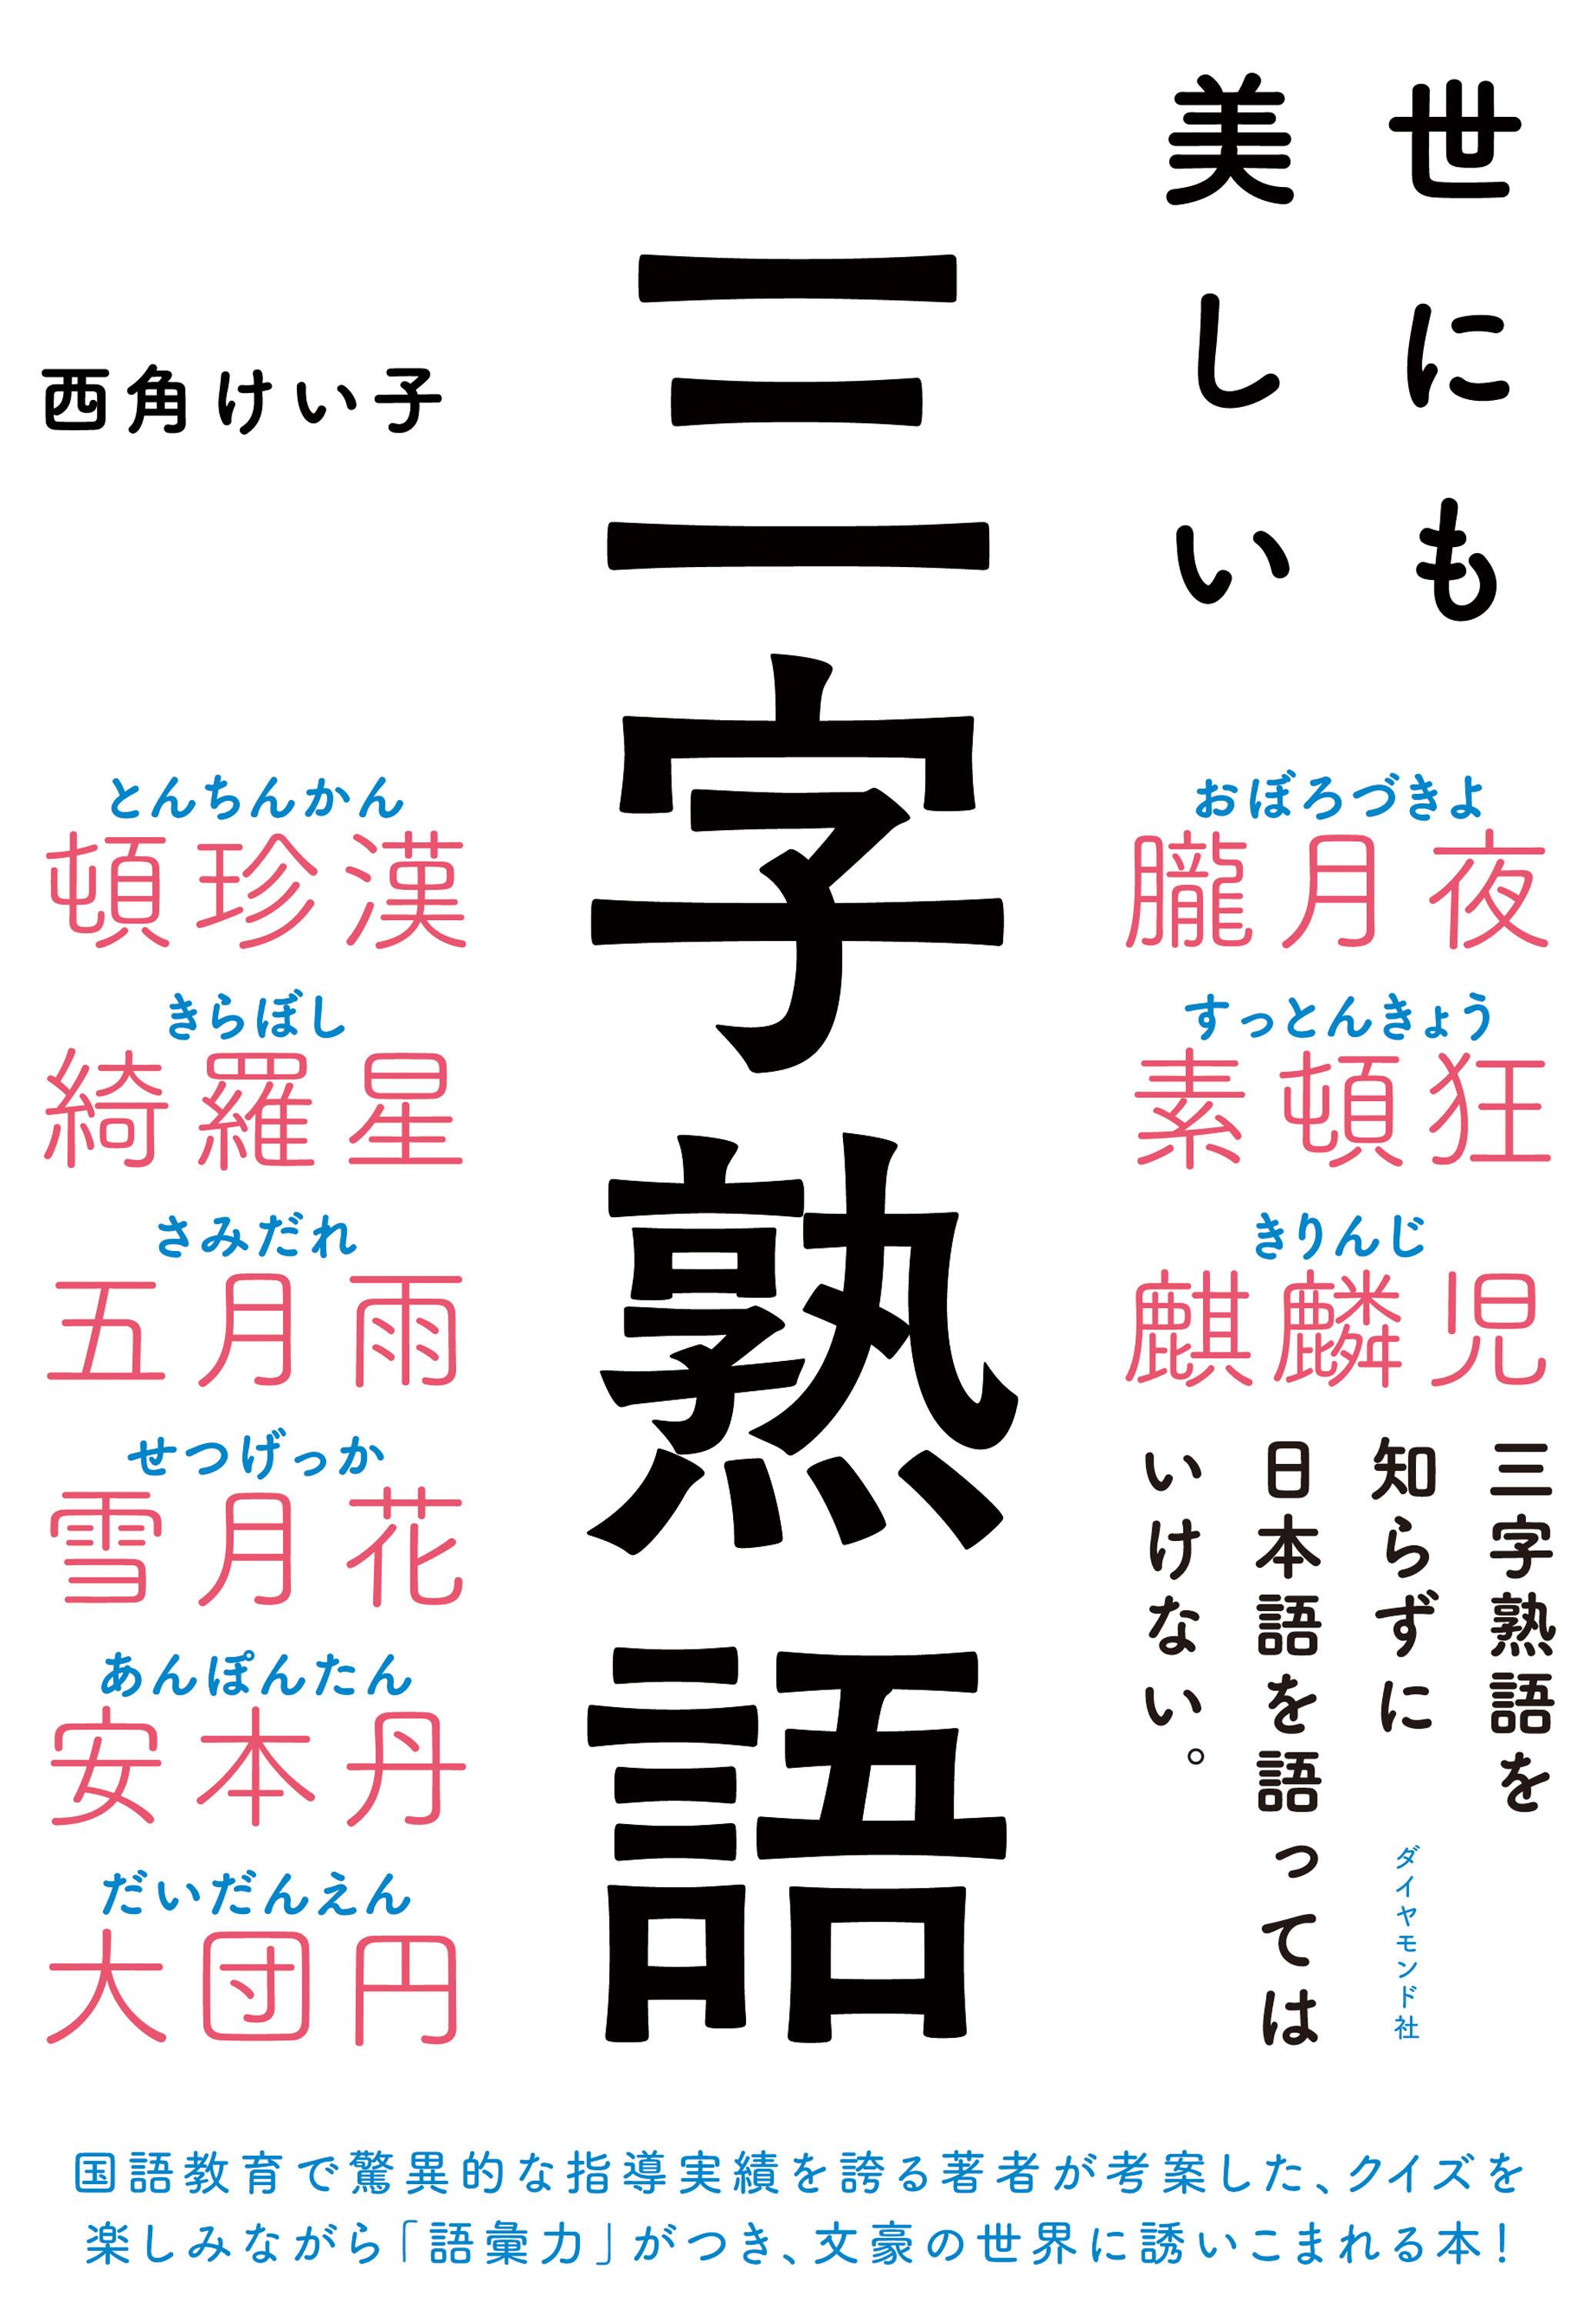 話題の本 世にも美しい三字熟語 豊かな日本語世界を紹介 産経ニュース